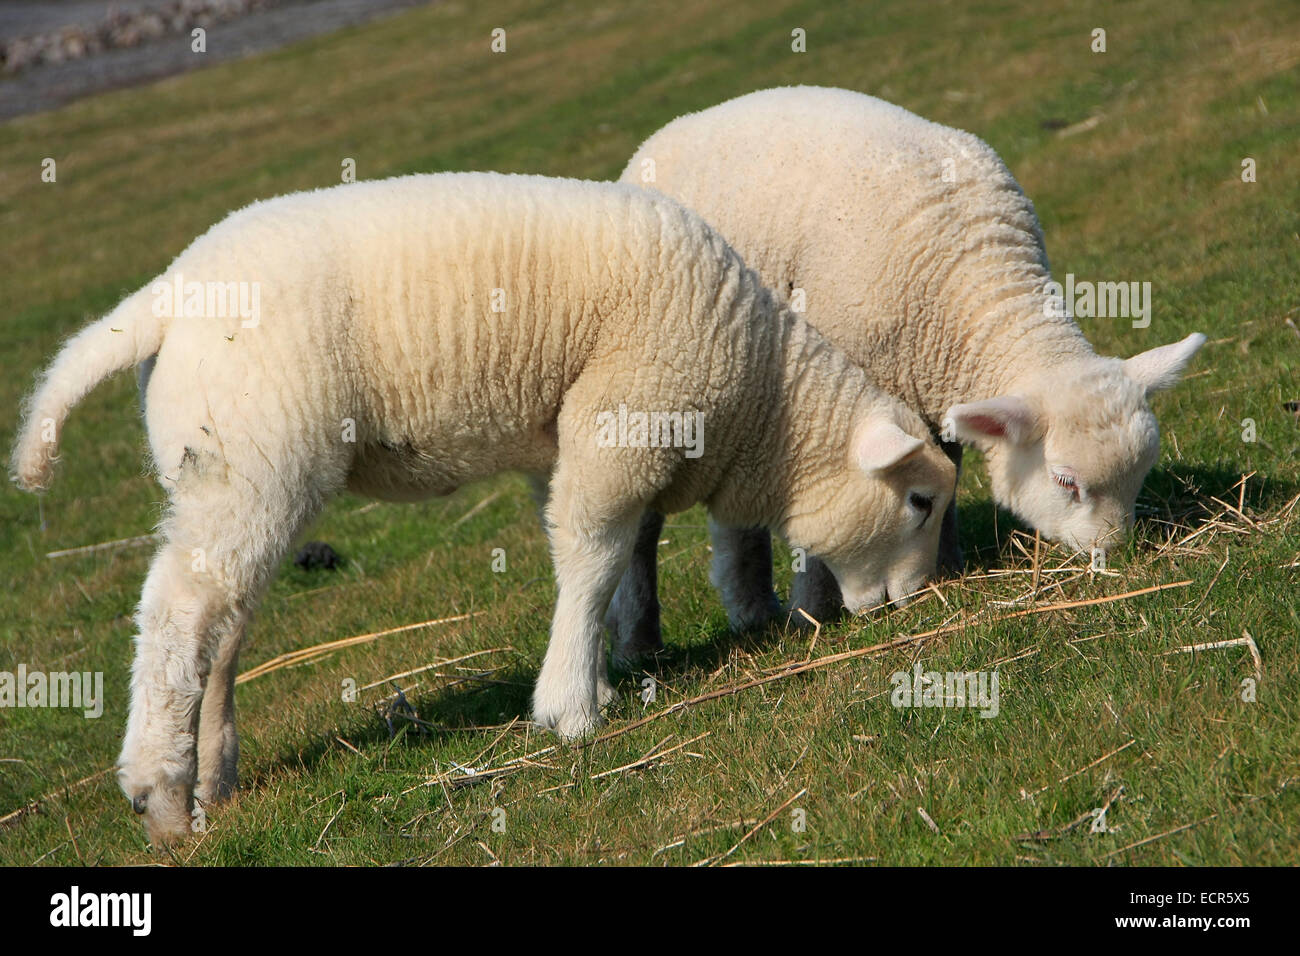 Schafe am Deich von Dunsum auf der Insel Föhr. Die Schafe am Deich sind Küstenschützer. Deiche, die viele jahre von Schafen beweidet werden, halten auch vielfach Sturmfluten stand. Schafe haben einen tiefen Biss. Die Grasnarbe bleibt Kurz und hat starke Bestockung. Das ergibt eine gute Erosionsbeständigkeit. Zusätzlich wird der Deich durch den Tritt der Schafe verfestigt. Foto: Klaus Nowottnick Datum: 19.04.2014 Foto Stock